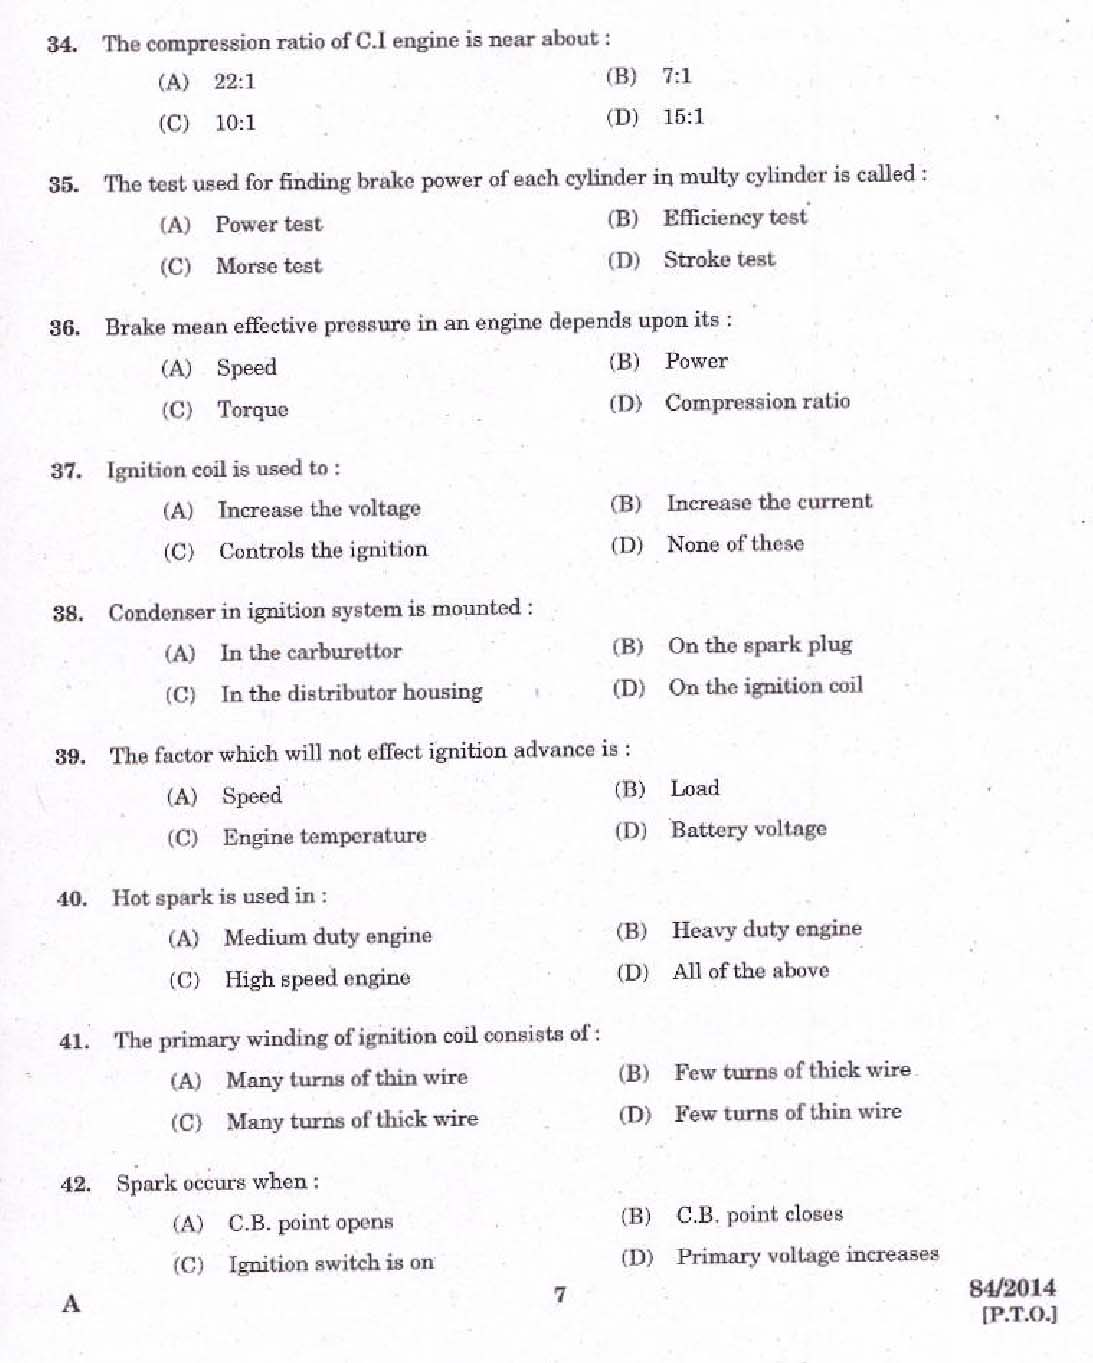 Kerala PSC Junior Instructor Exam 2014 Question Paper Code 842014 5